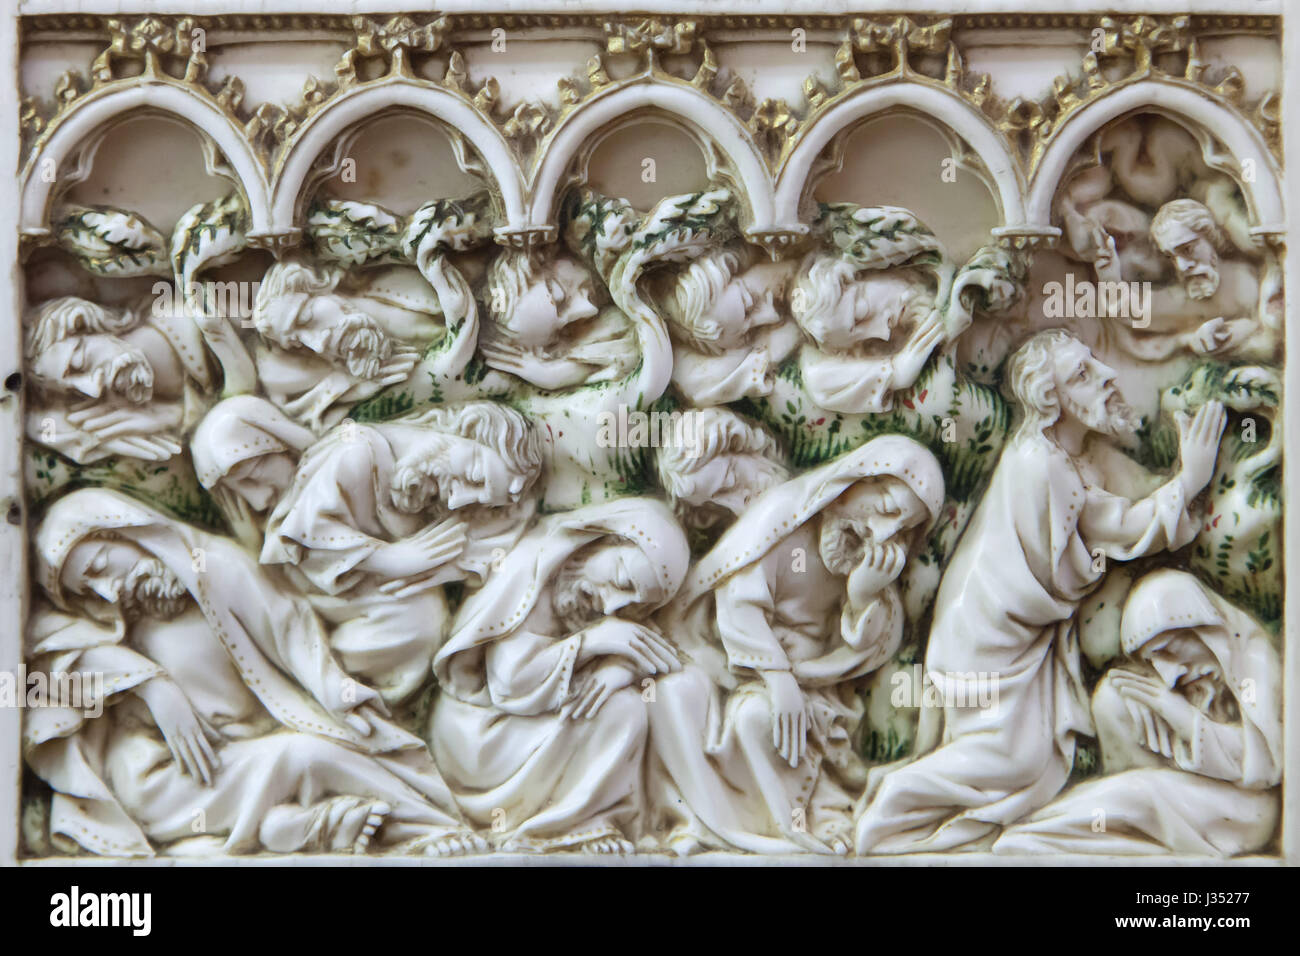 Agonía en el huerto. Detalle del retablo de marfil de las escenas de la Pasión de Cristo fecha de ca. 1375-1400 en la pantalla en el Musée des Beaux-Arts de Dijon (Museo de Bellas Artes) en Dijon, Borgoña, Francia. Foto de stock